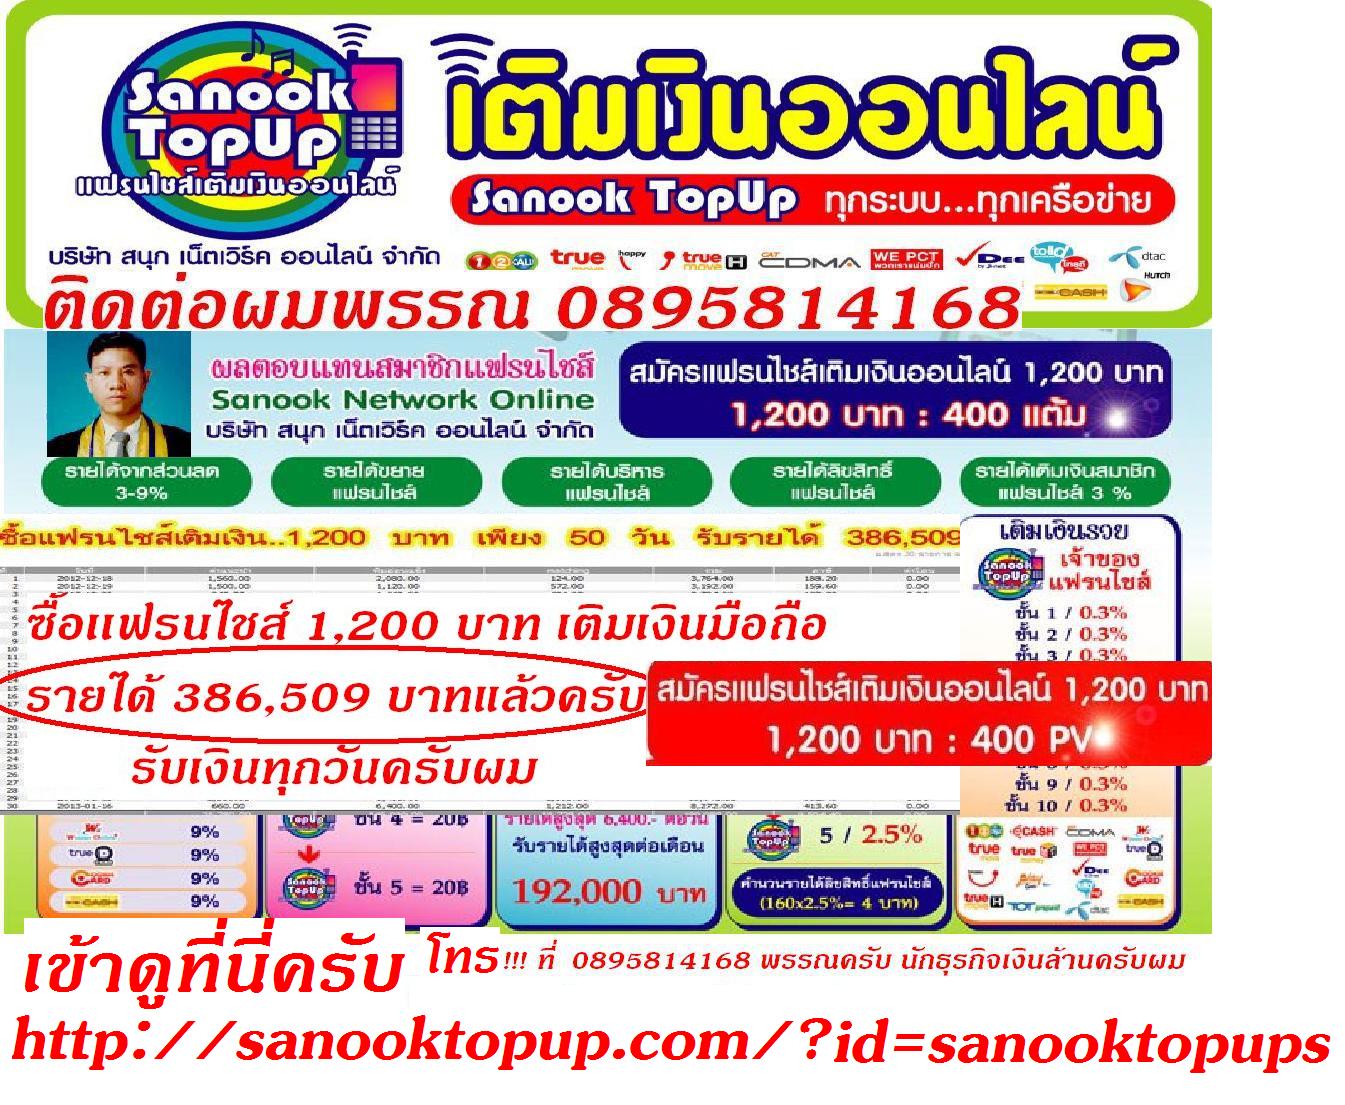 SANOOK TOPUP ธุรกิจเงินล้าน เติมเงินมือถือออนไลน์